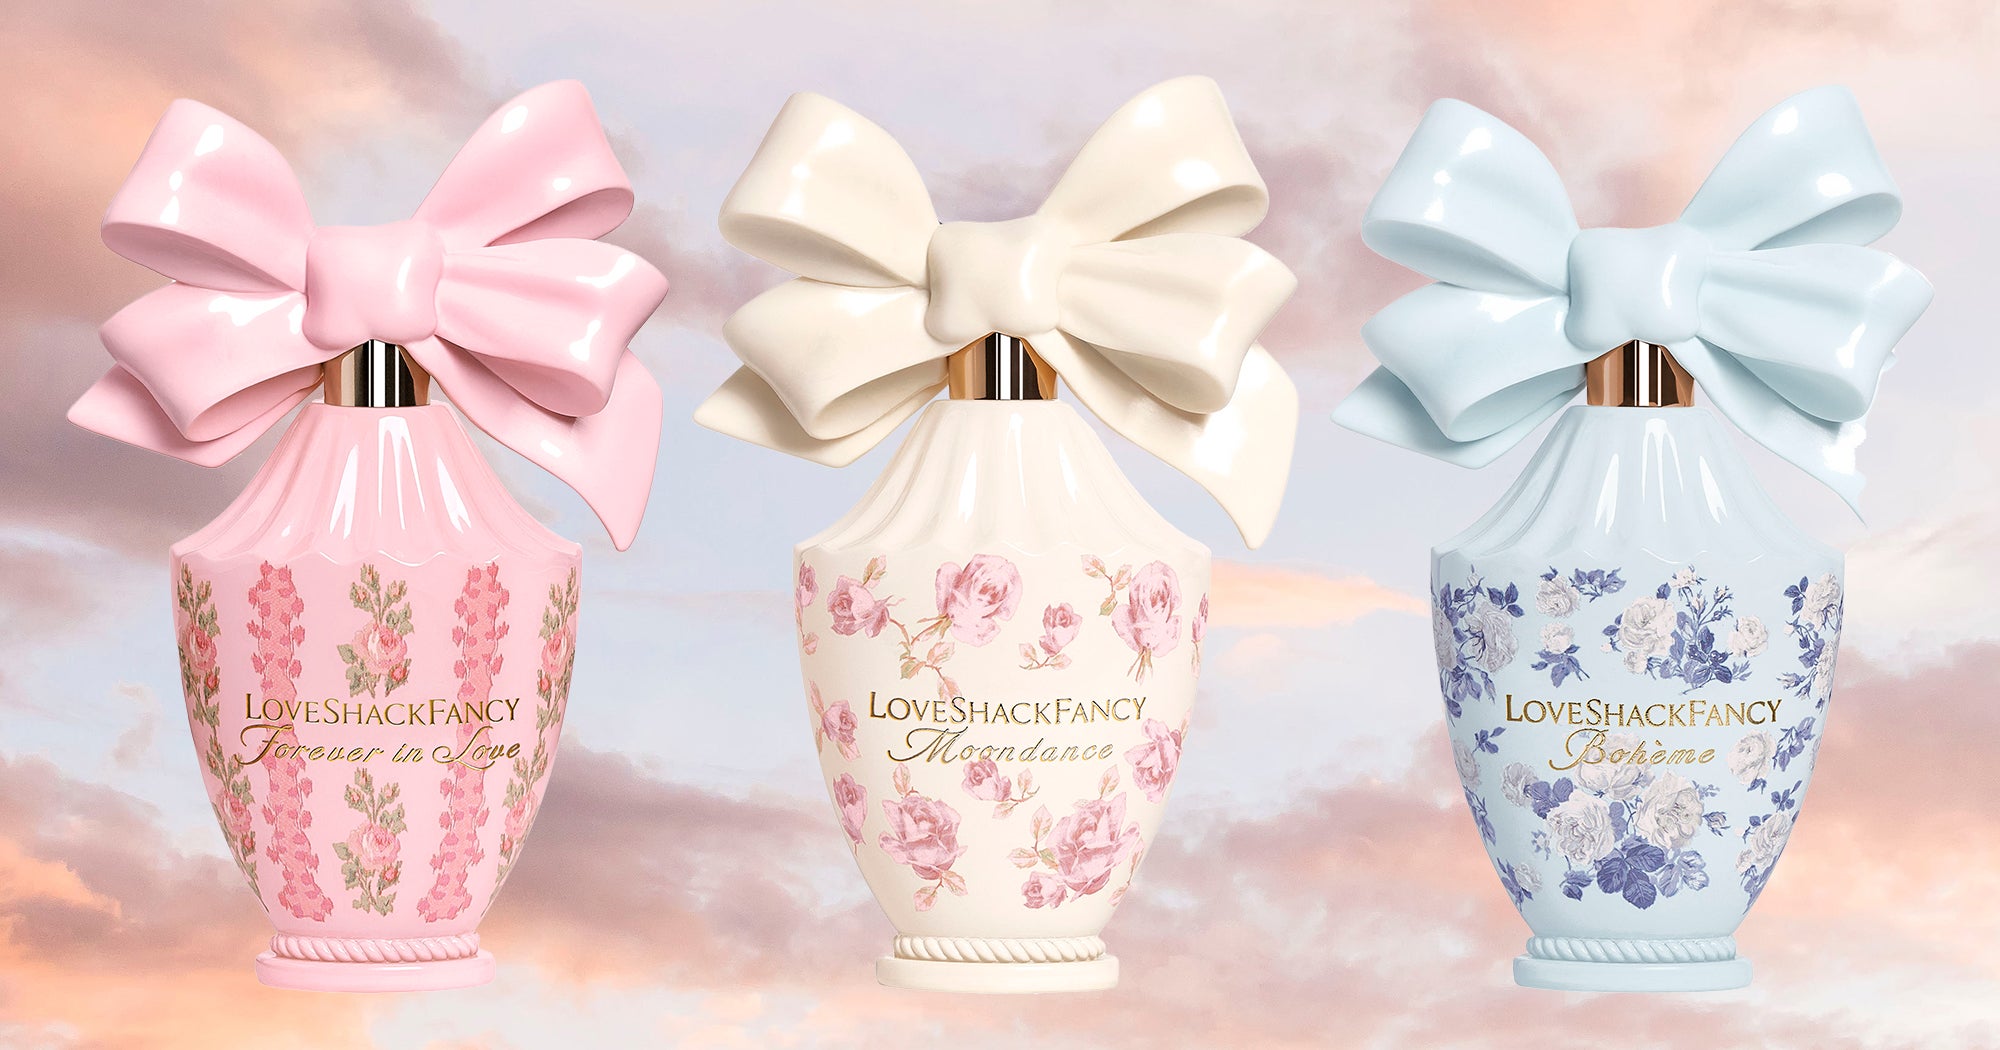 LoveShackFancy Beauty Fragrance Perfume Launch 2023